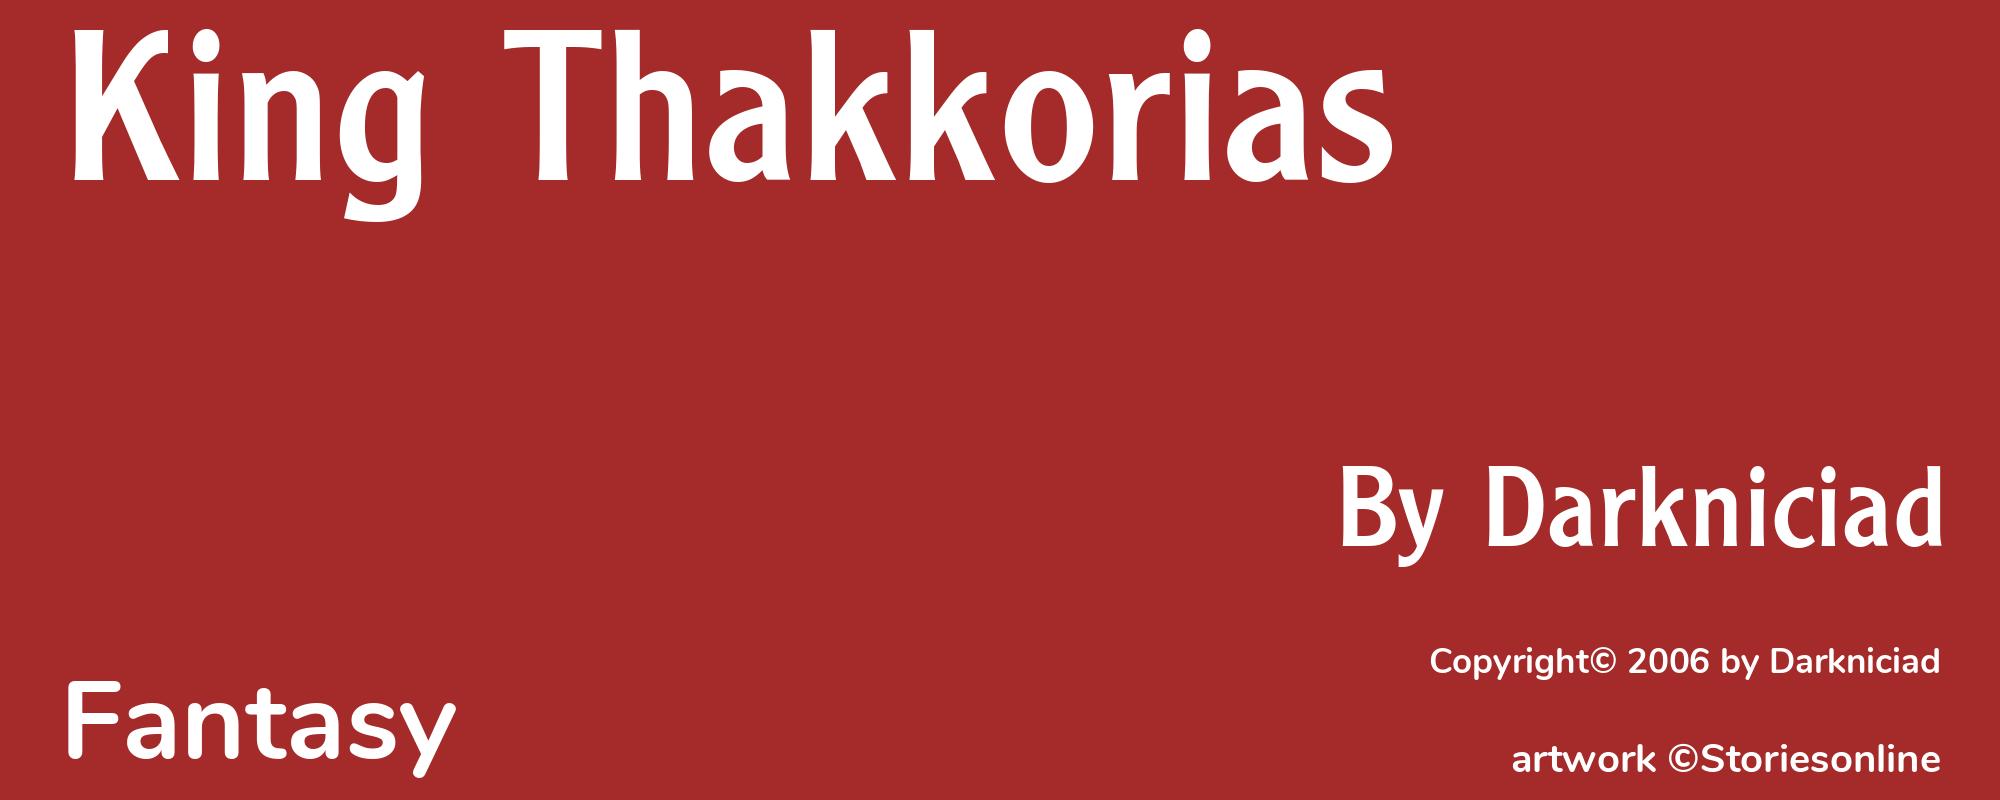 King Thakkorias - Cover